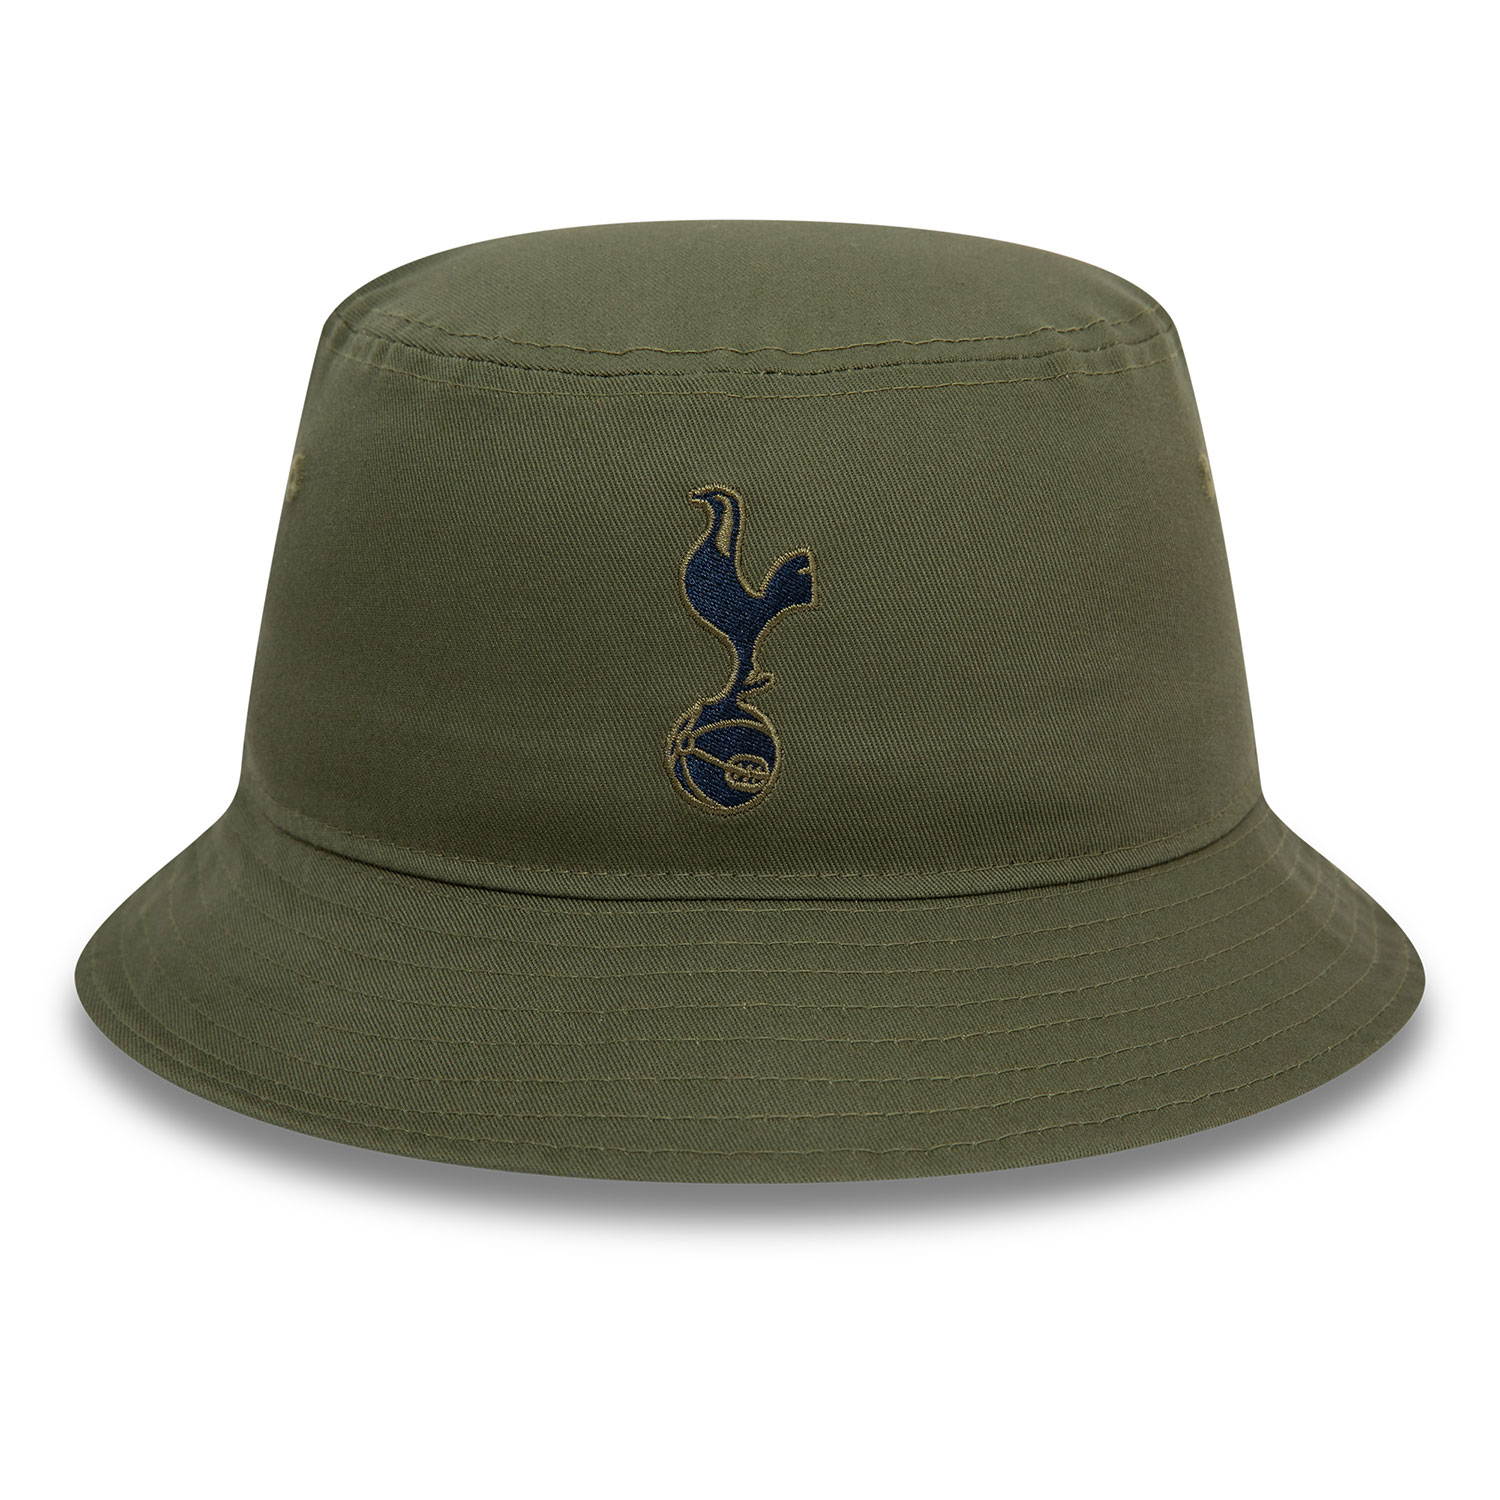 Tottenham Hotspur FC Dark Green Bucket Hat